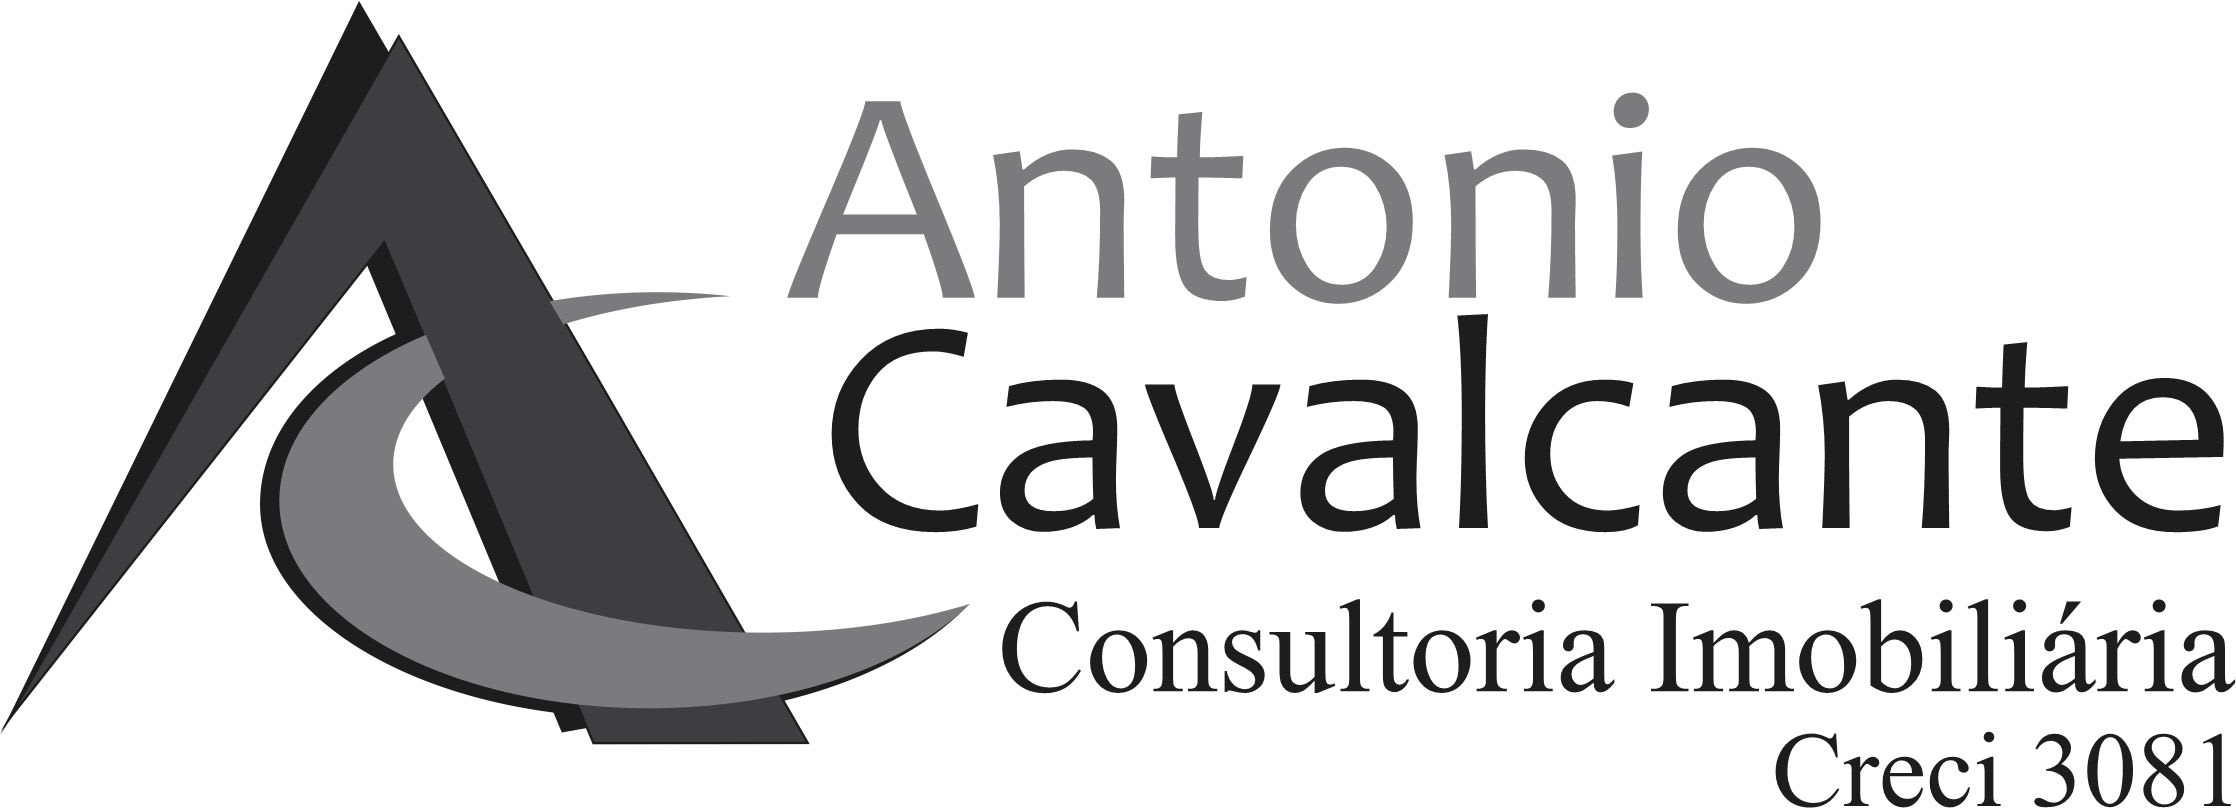 Antonio Cavalcante - Consultoria Imobiliária